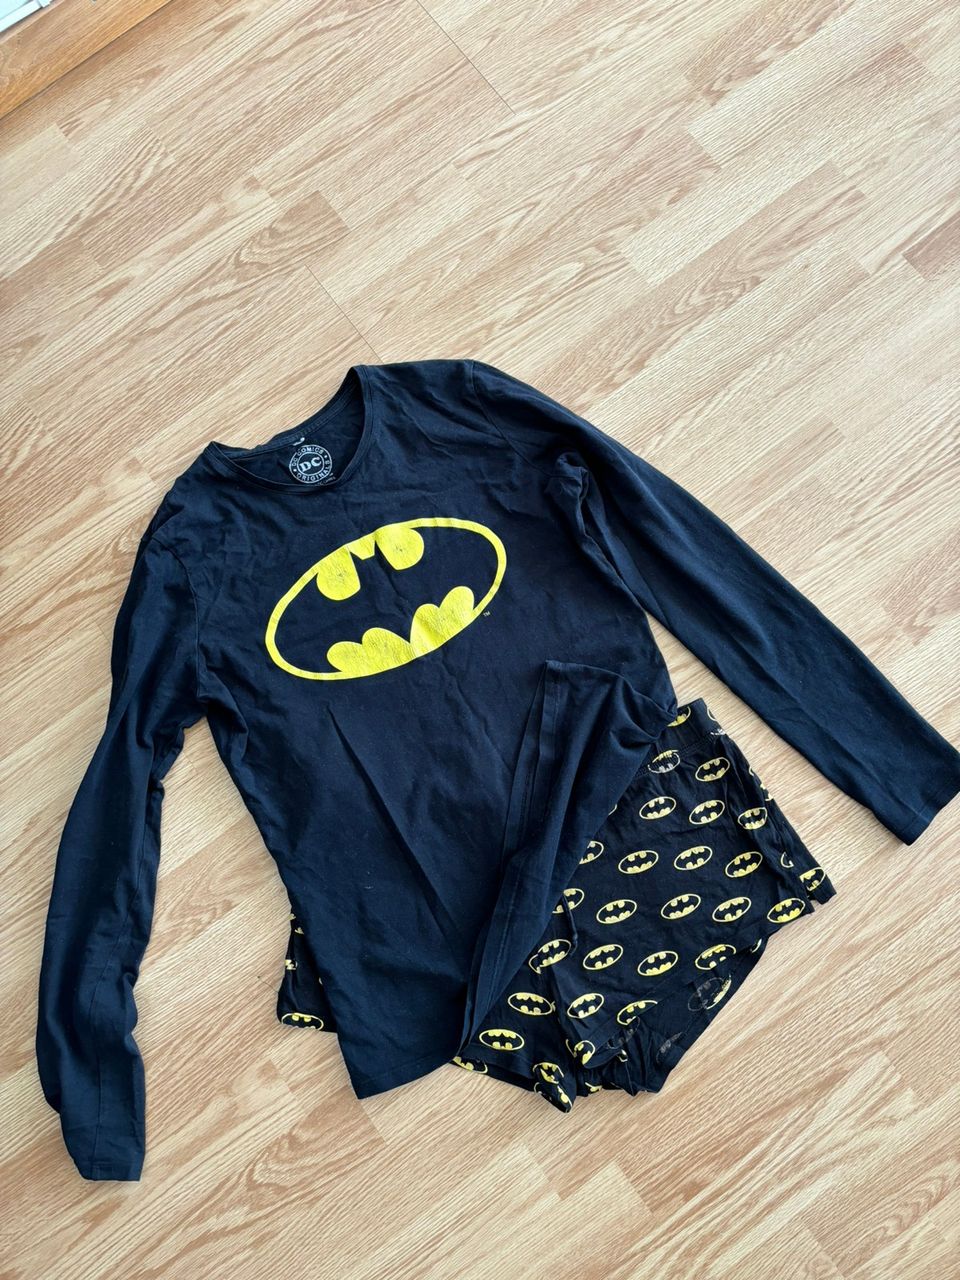 Batman pyjama